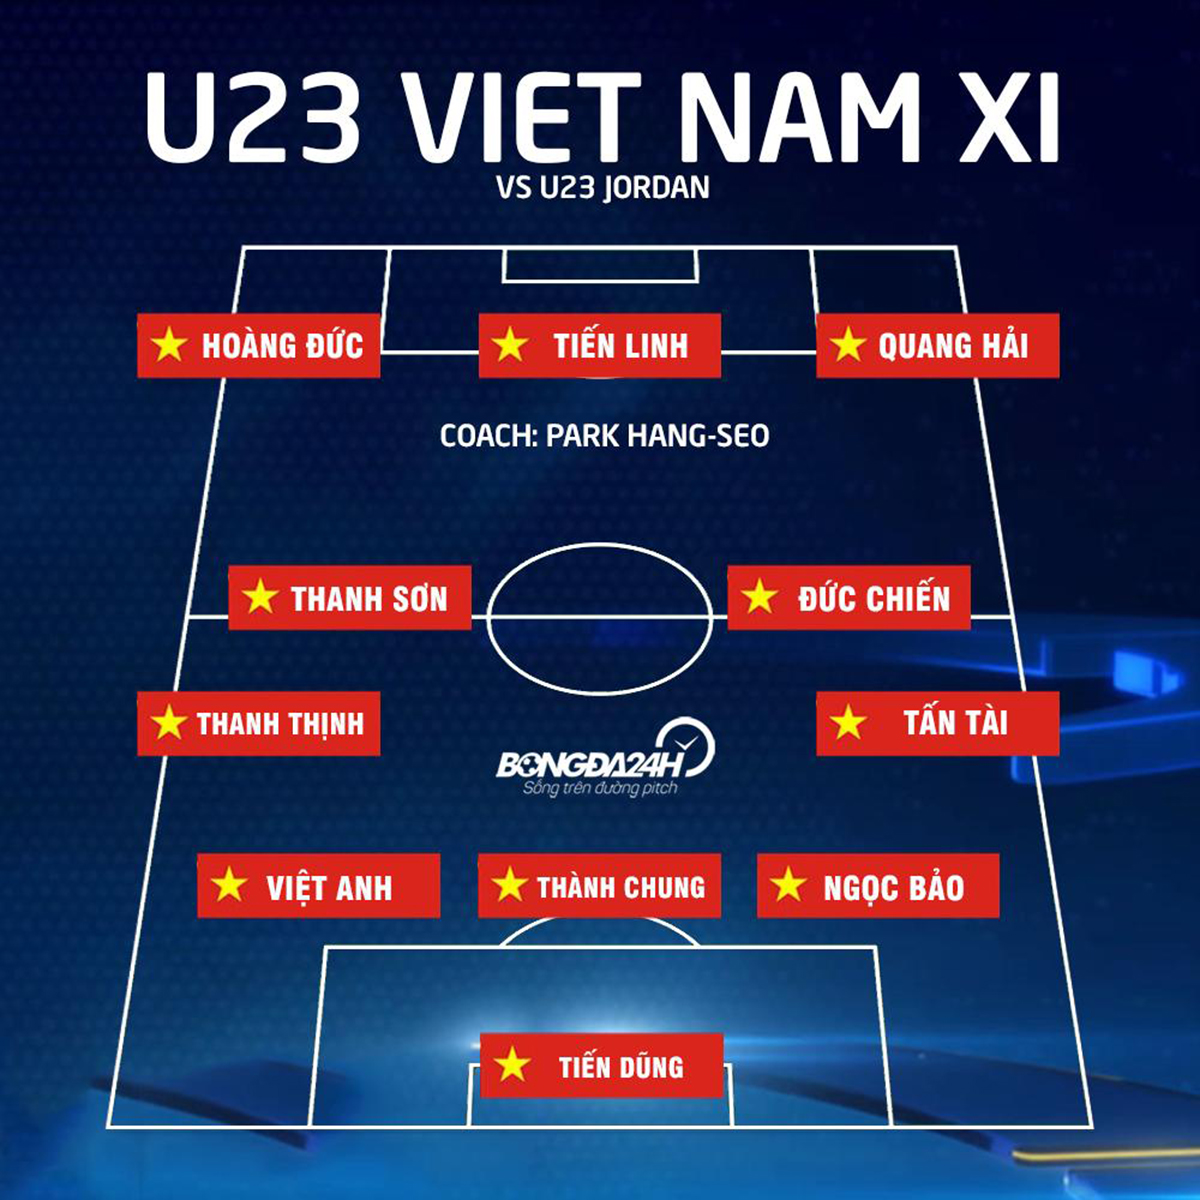 Danh sach xuat phat cua U23 Viet Nam vs U23 Jordan